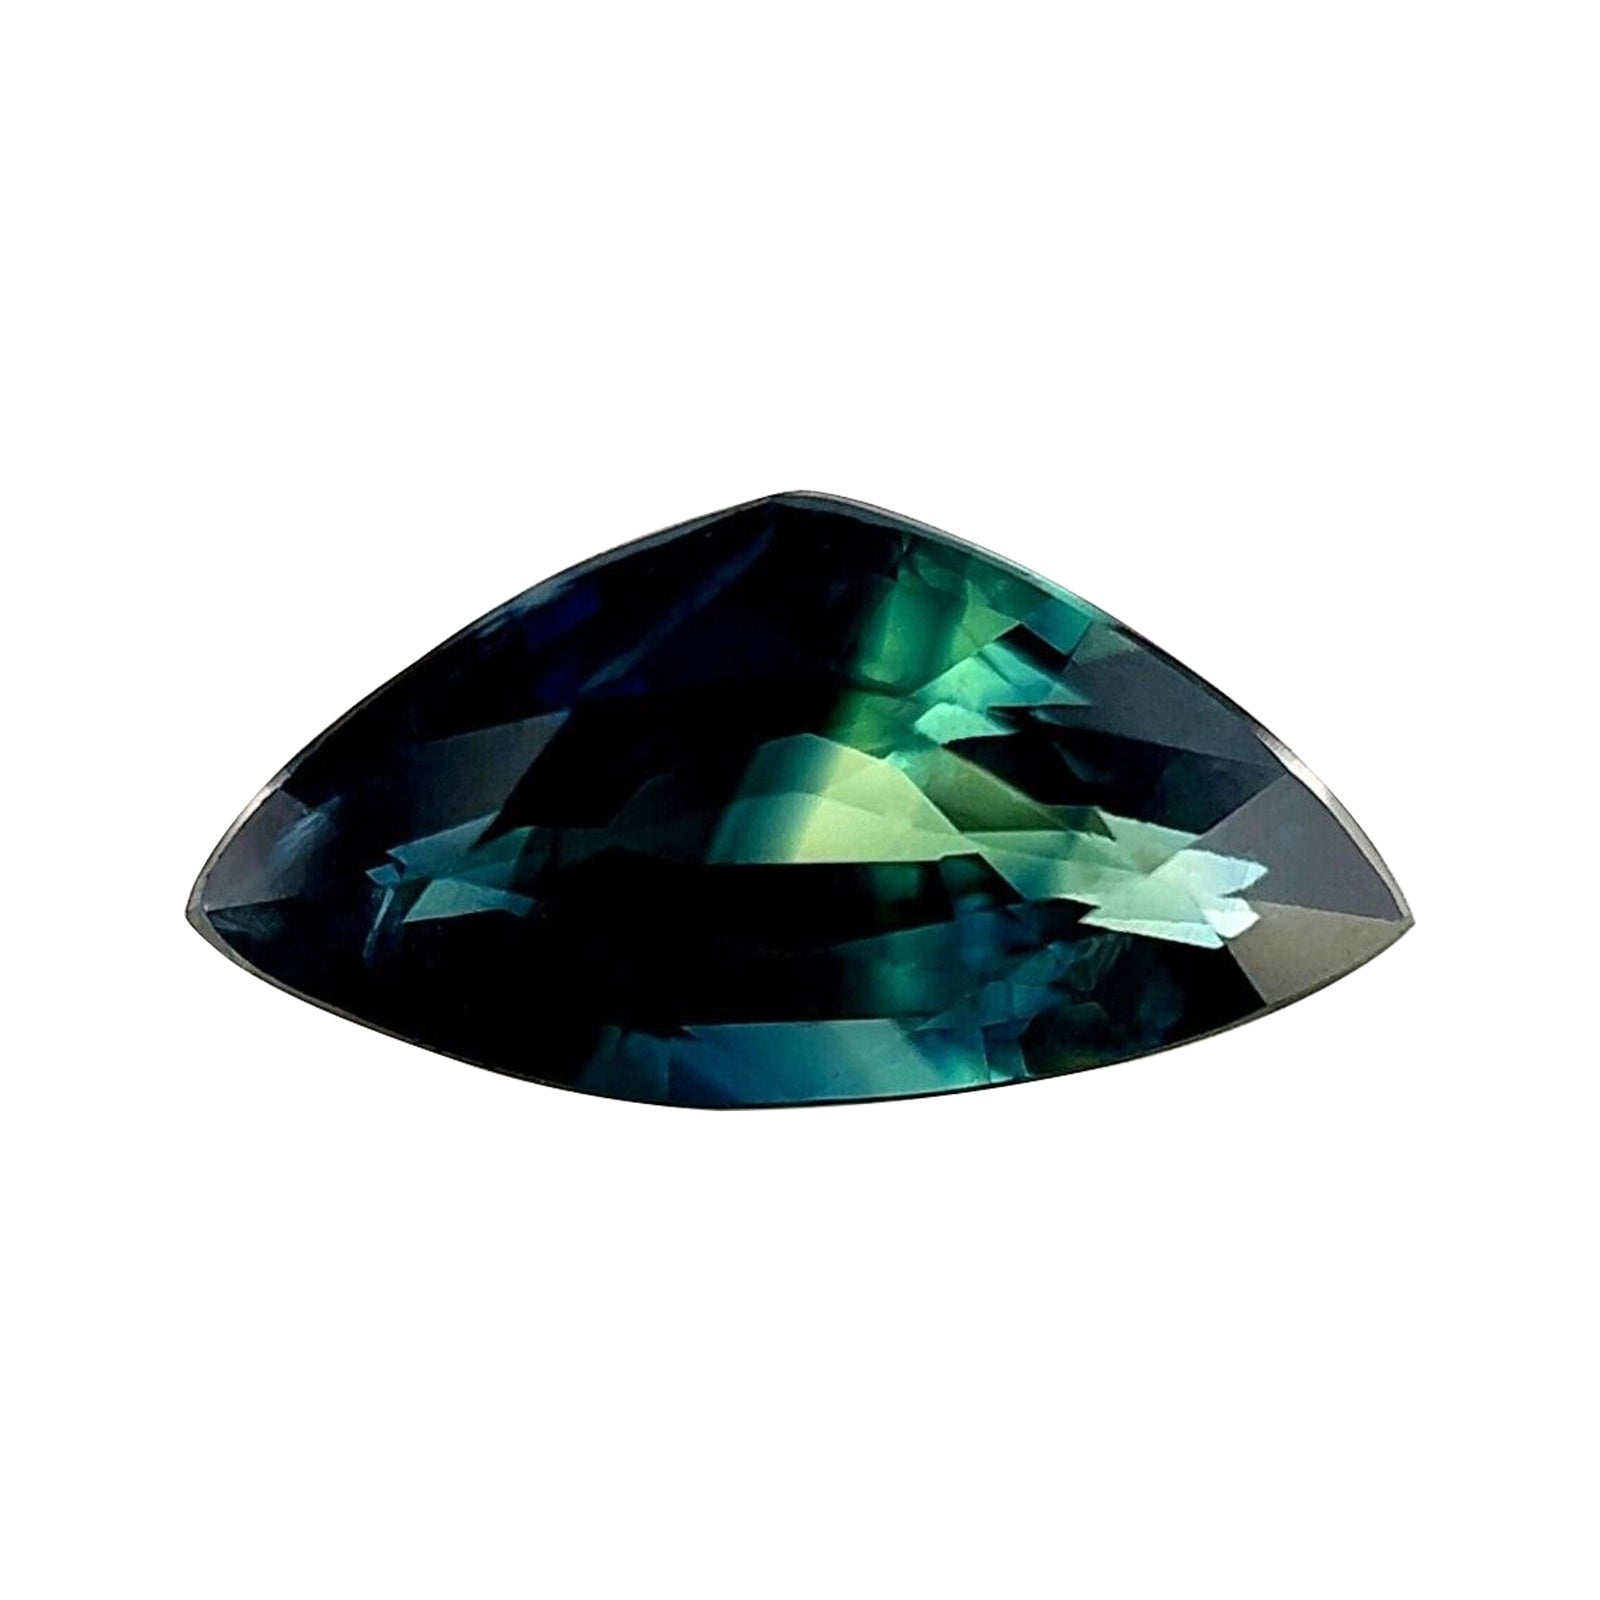 Pierre précieuse non sertie de 1,86 carat, saphir bicolore bleu et vert, taille trillion